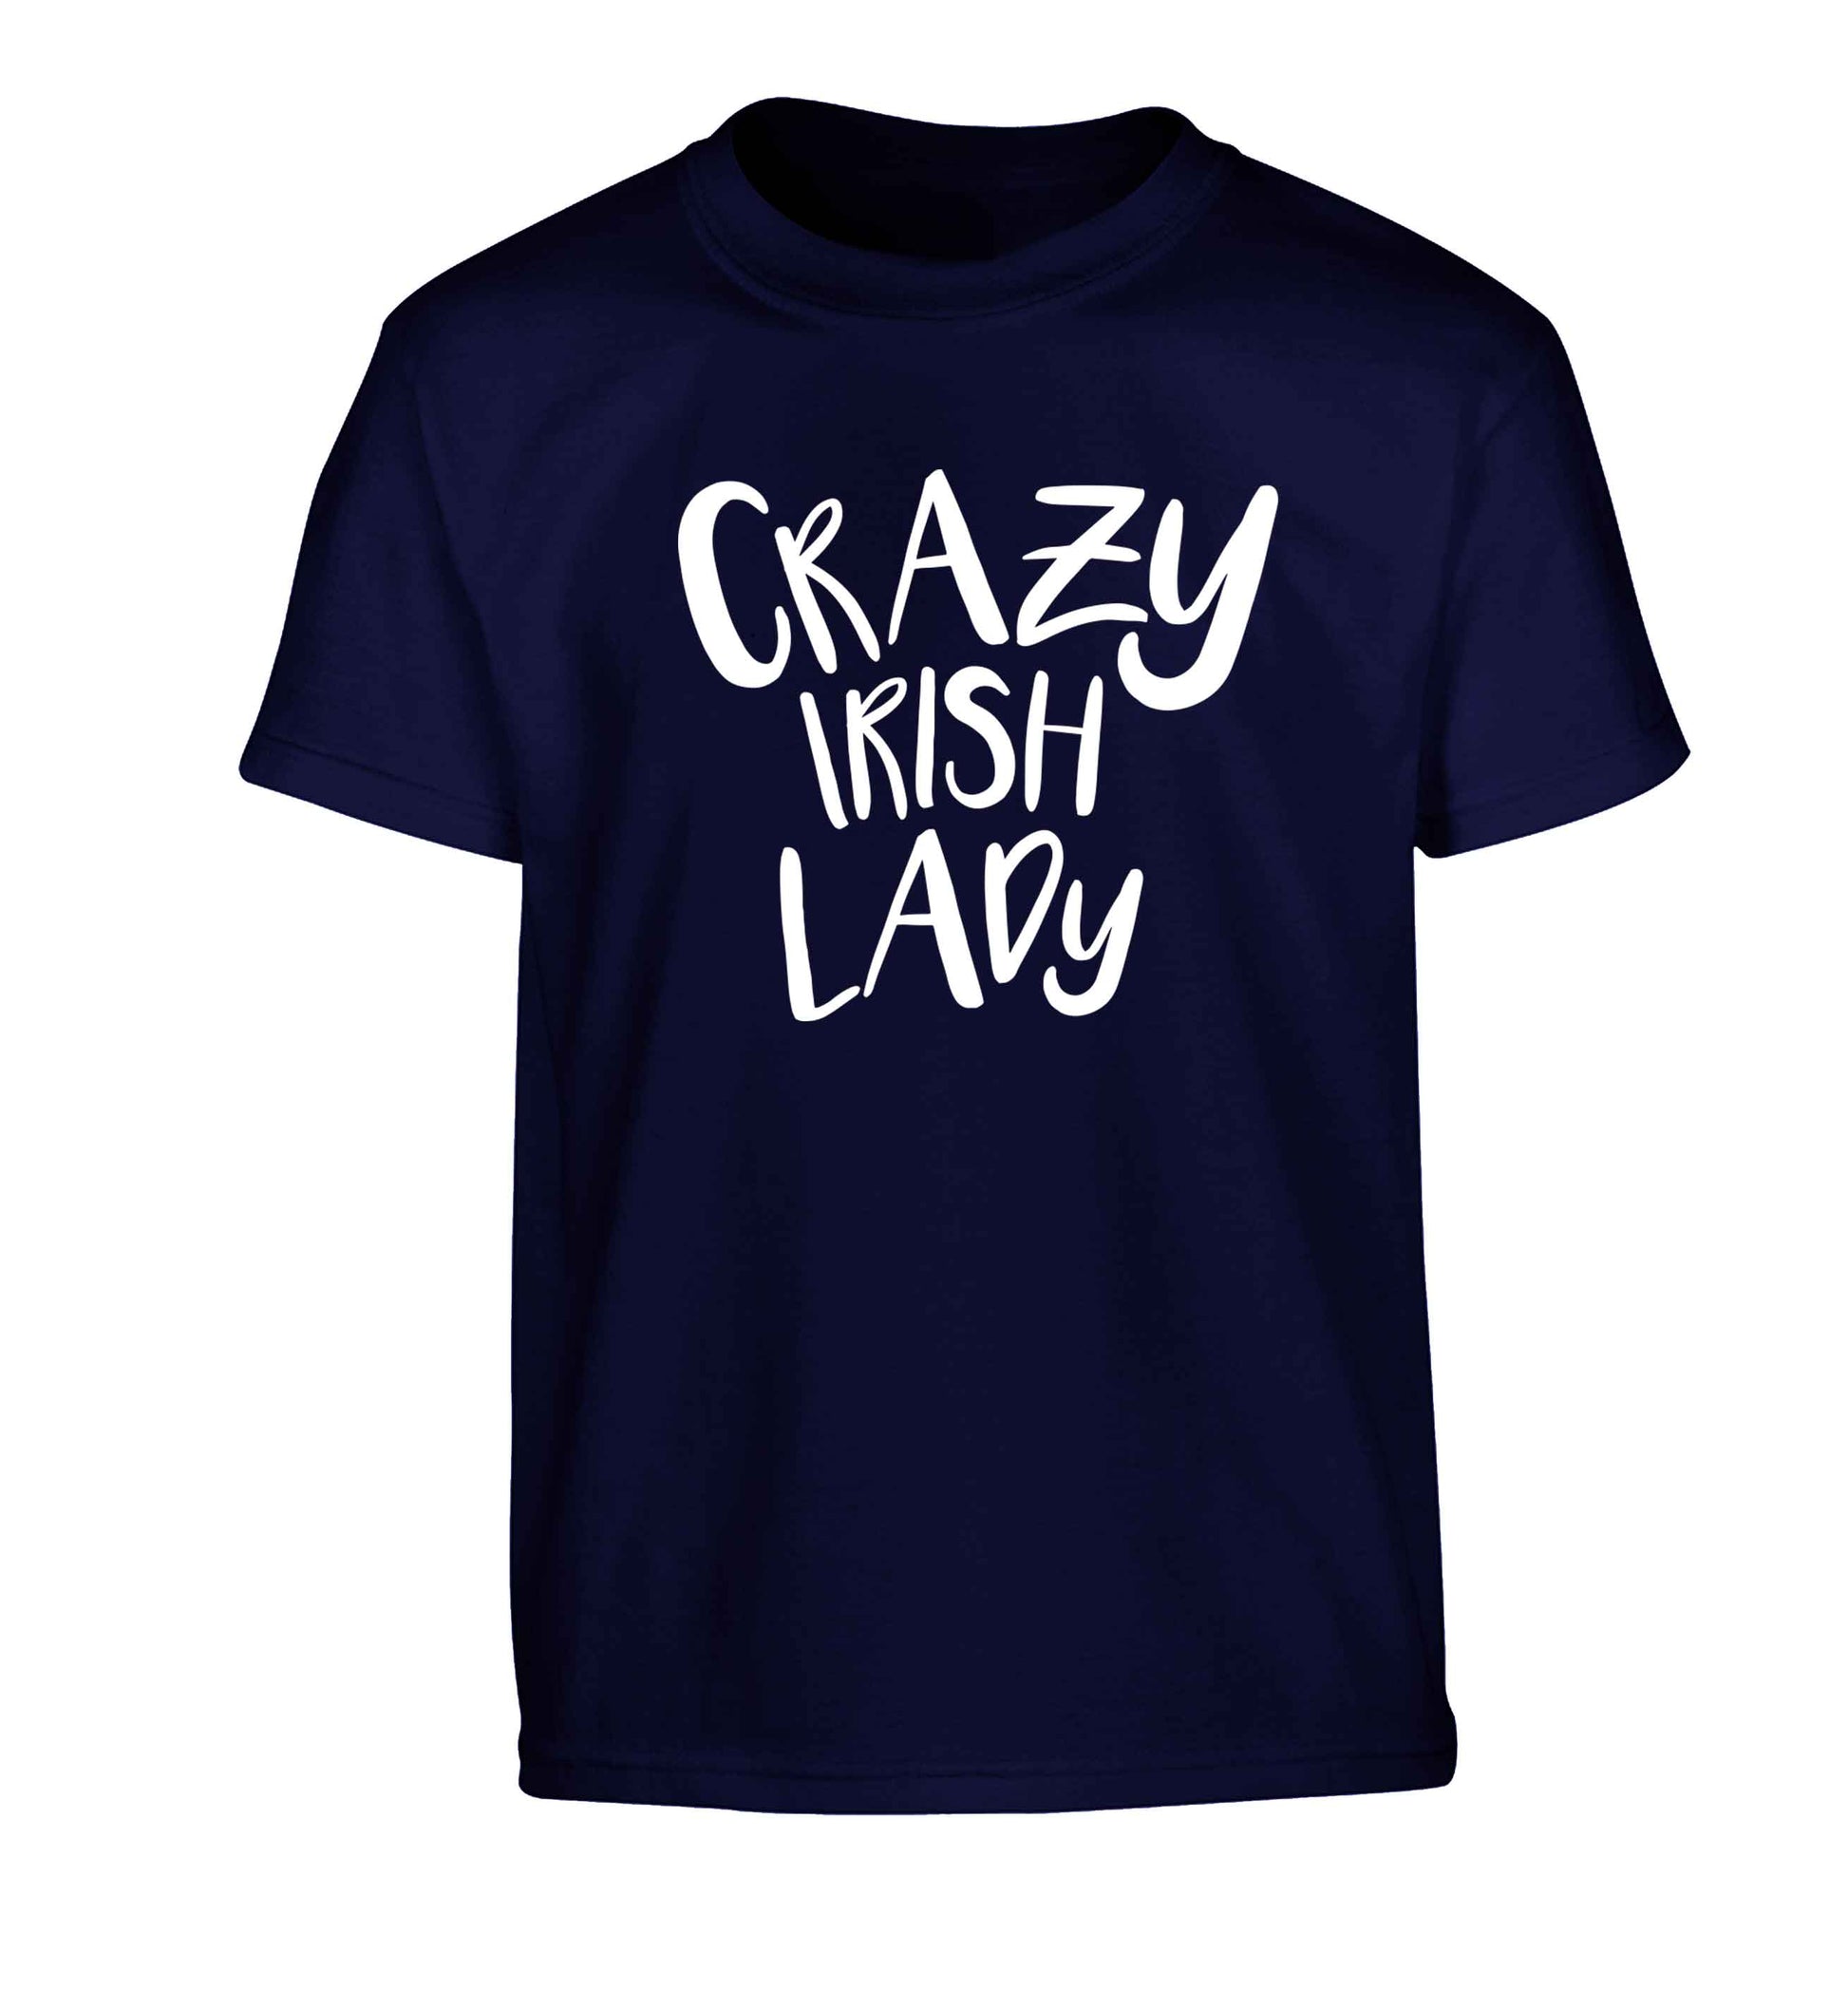 Crazy Irish lady Children's navy Tshirt 12-13 Years